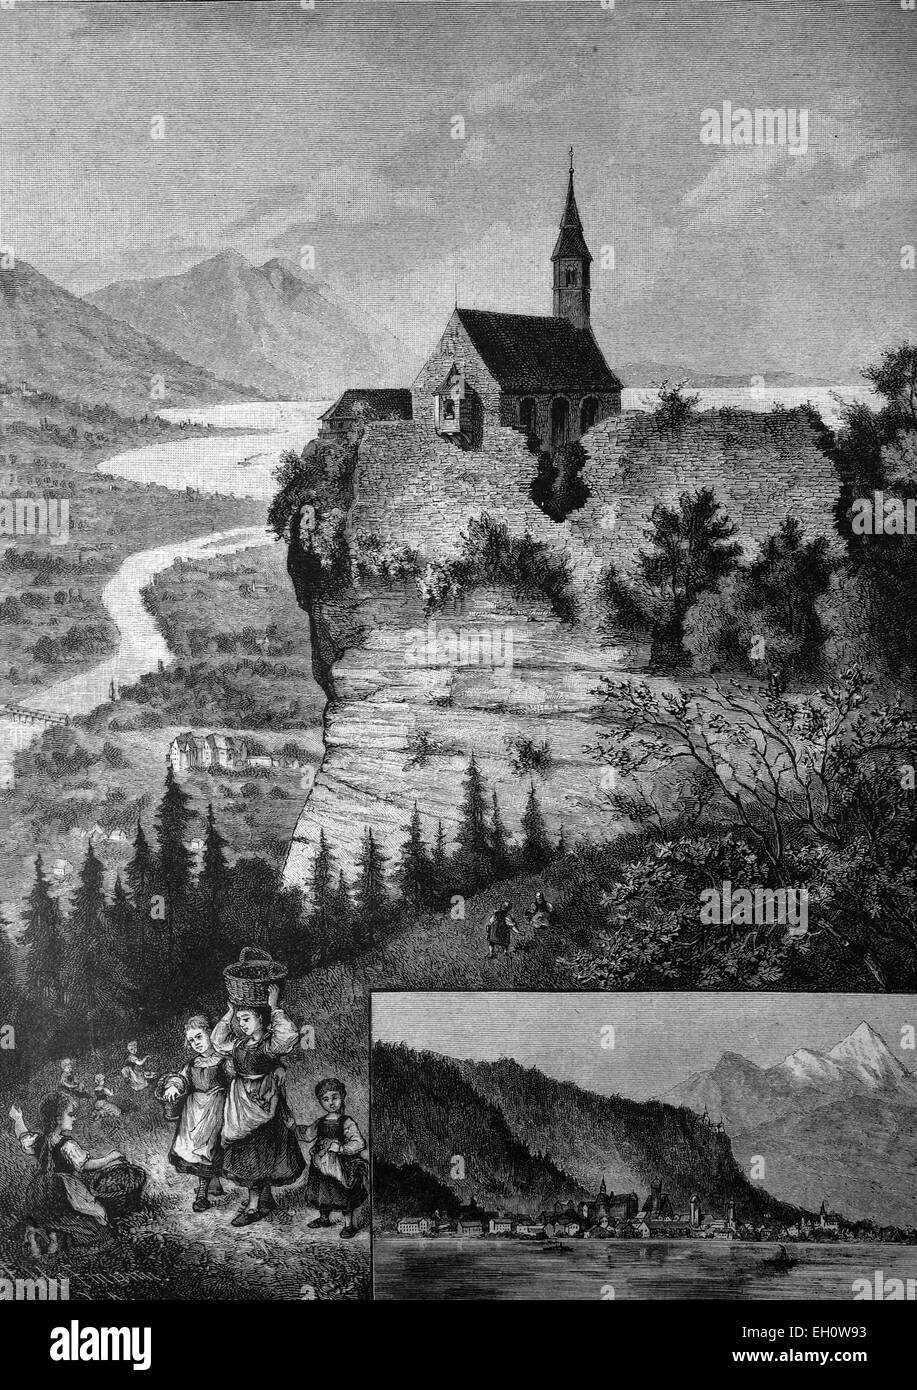 Chapelle de pèlerinage sur la montagne Gebhardsberg près de Bregenz, illustration historique, vers 1886, Vorarlberg, Autriche, Europe Banque D'Images